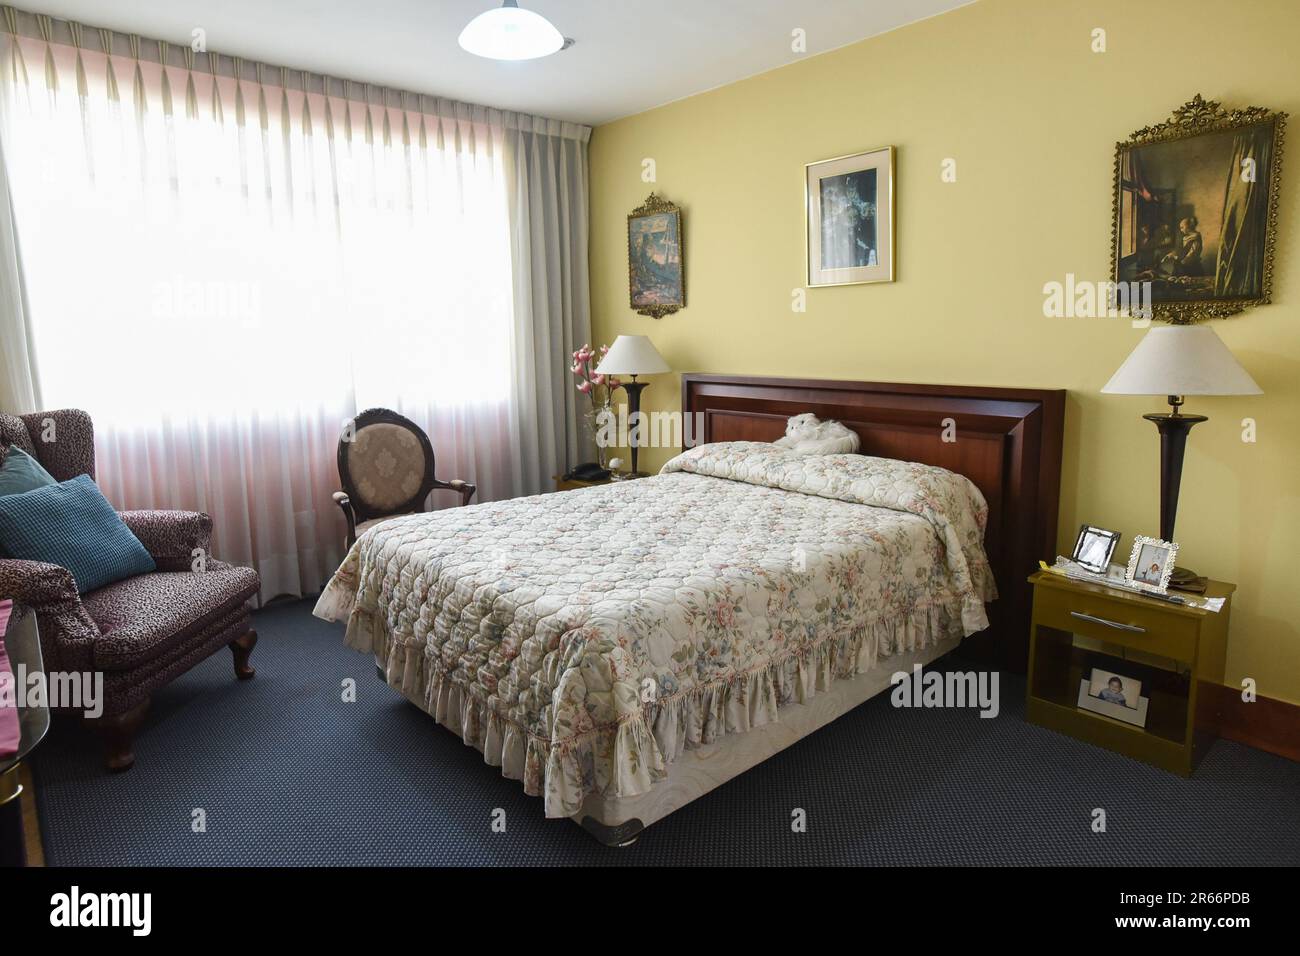 habitacion para turistas con muebles clasicos, closet y ventana Stock Photo